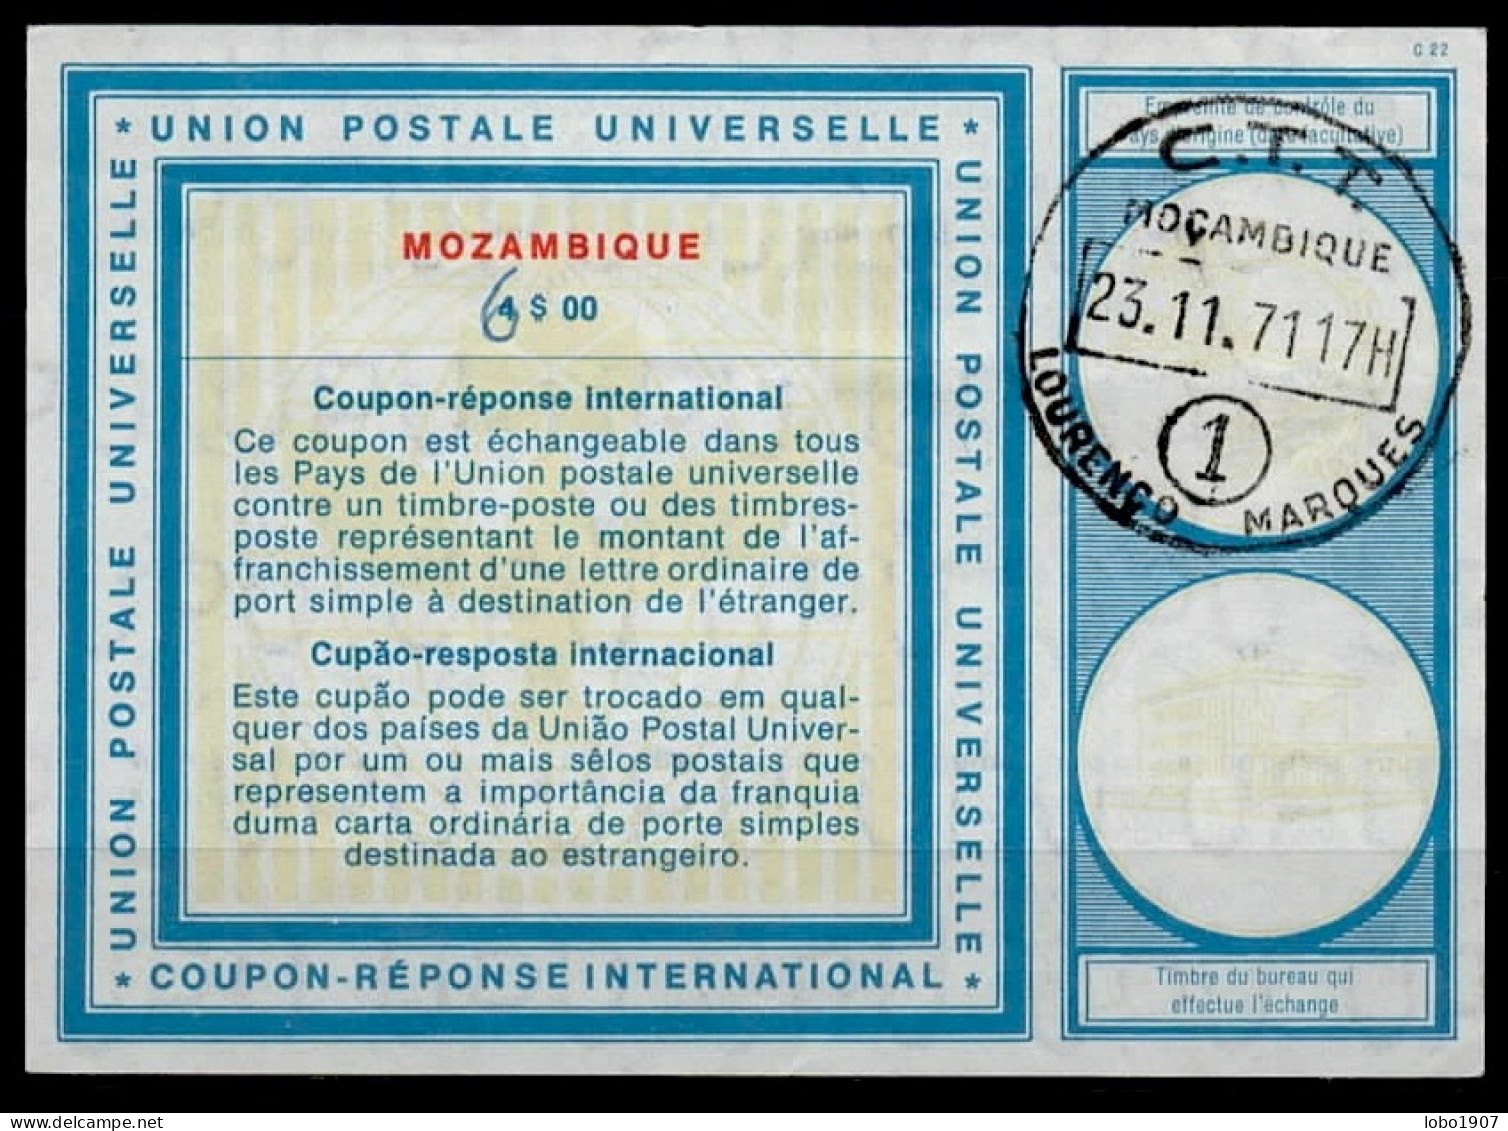 MOZAMBIQUE  Vi19  6 / 4$00 International Reply Coupon Reponse Cupon Respuesta IRC IAS  Cupon Respuesta O LOURENZO MARQUE - Mozambique